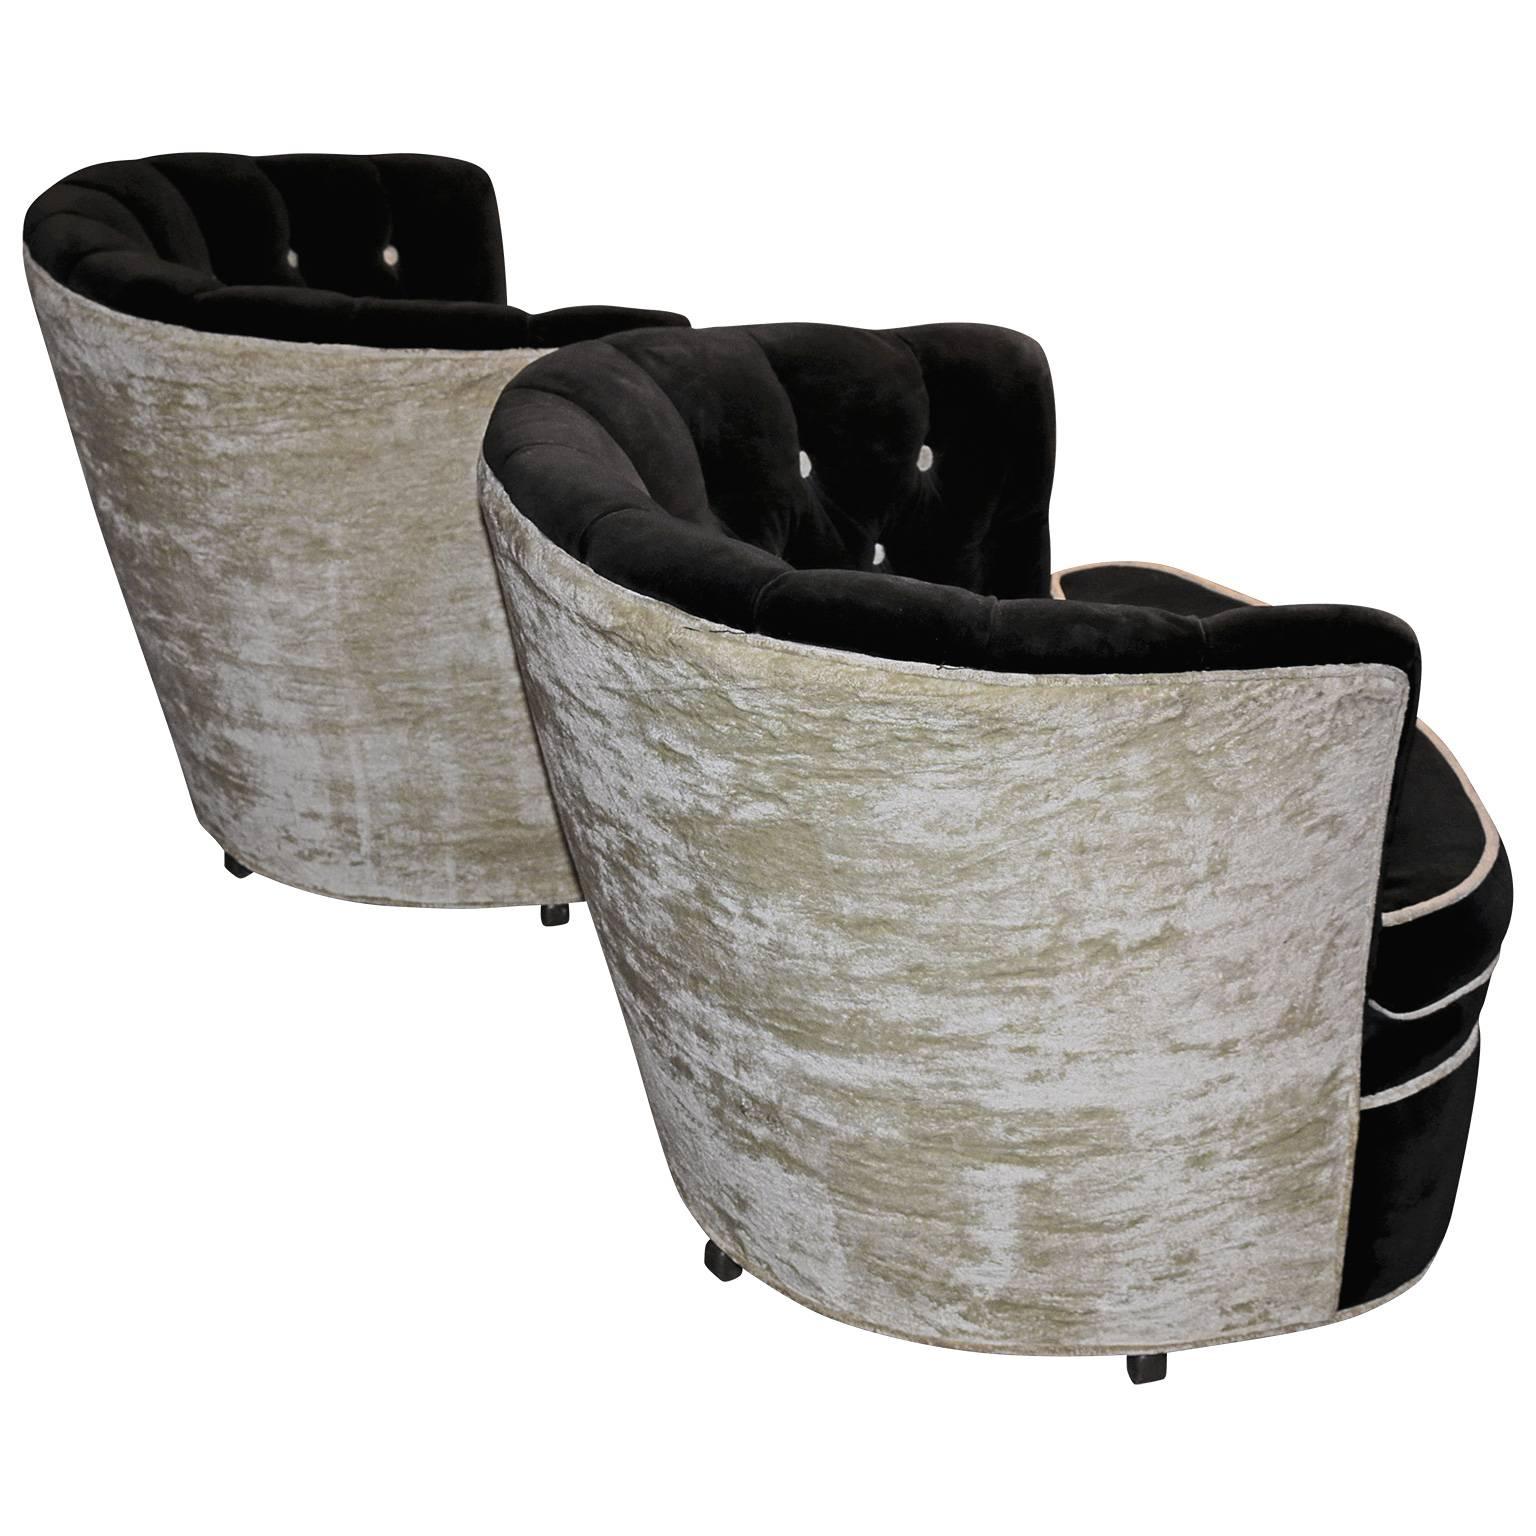 Italian Pair of Soft Cushion Black Pouf Club Chairs